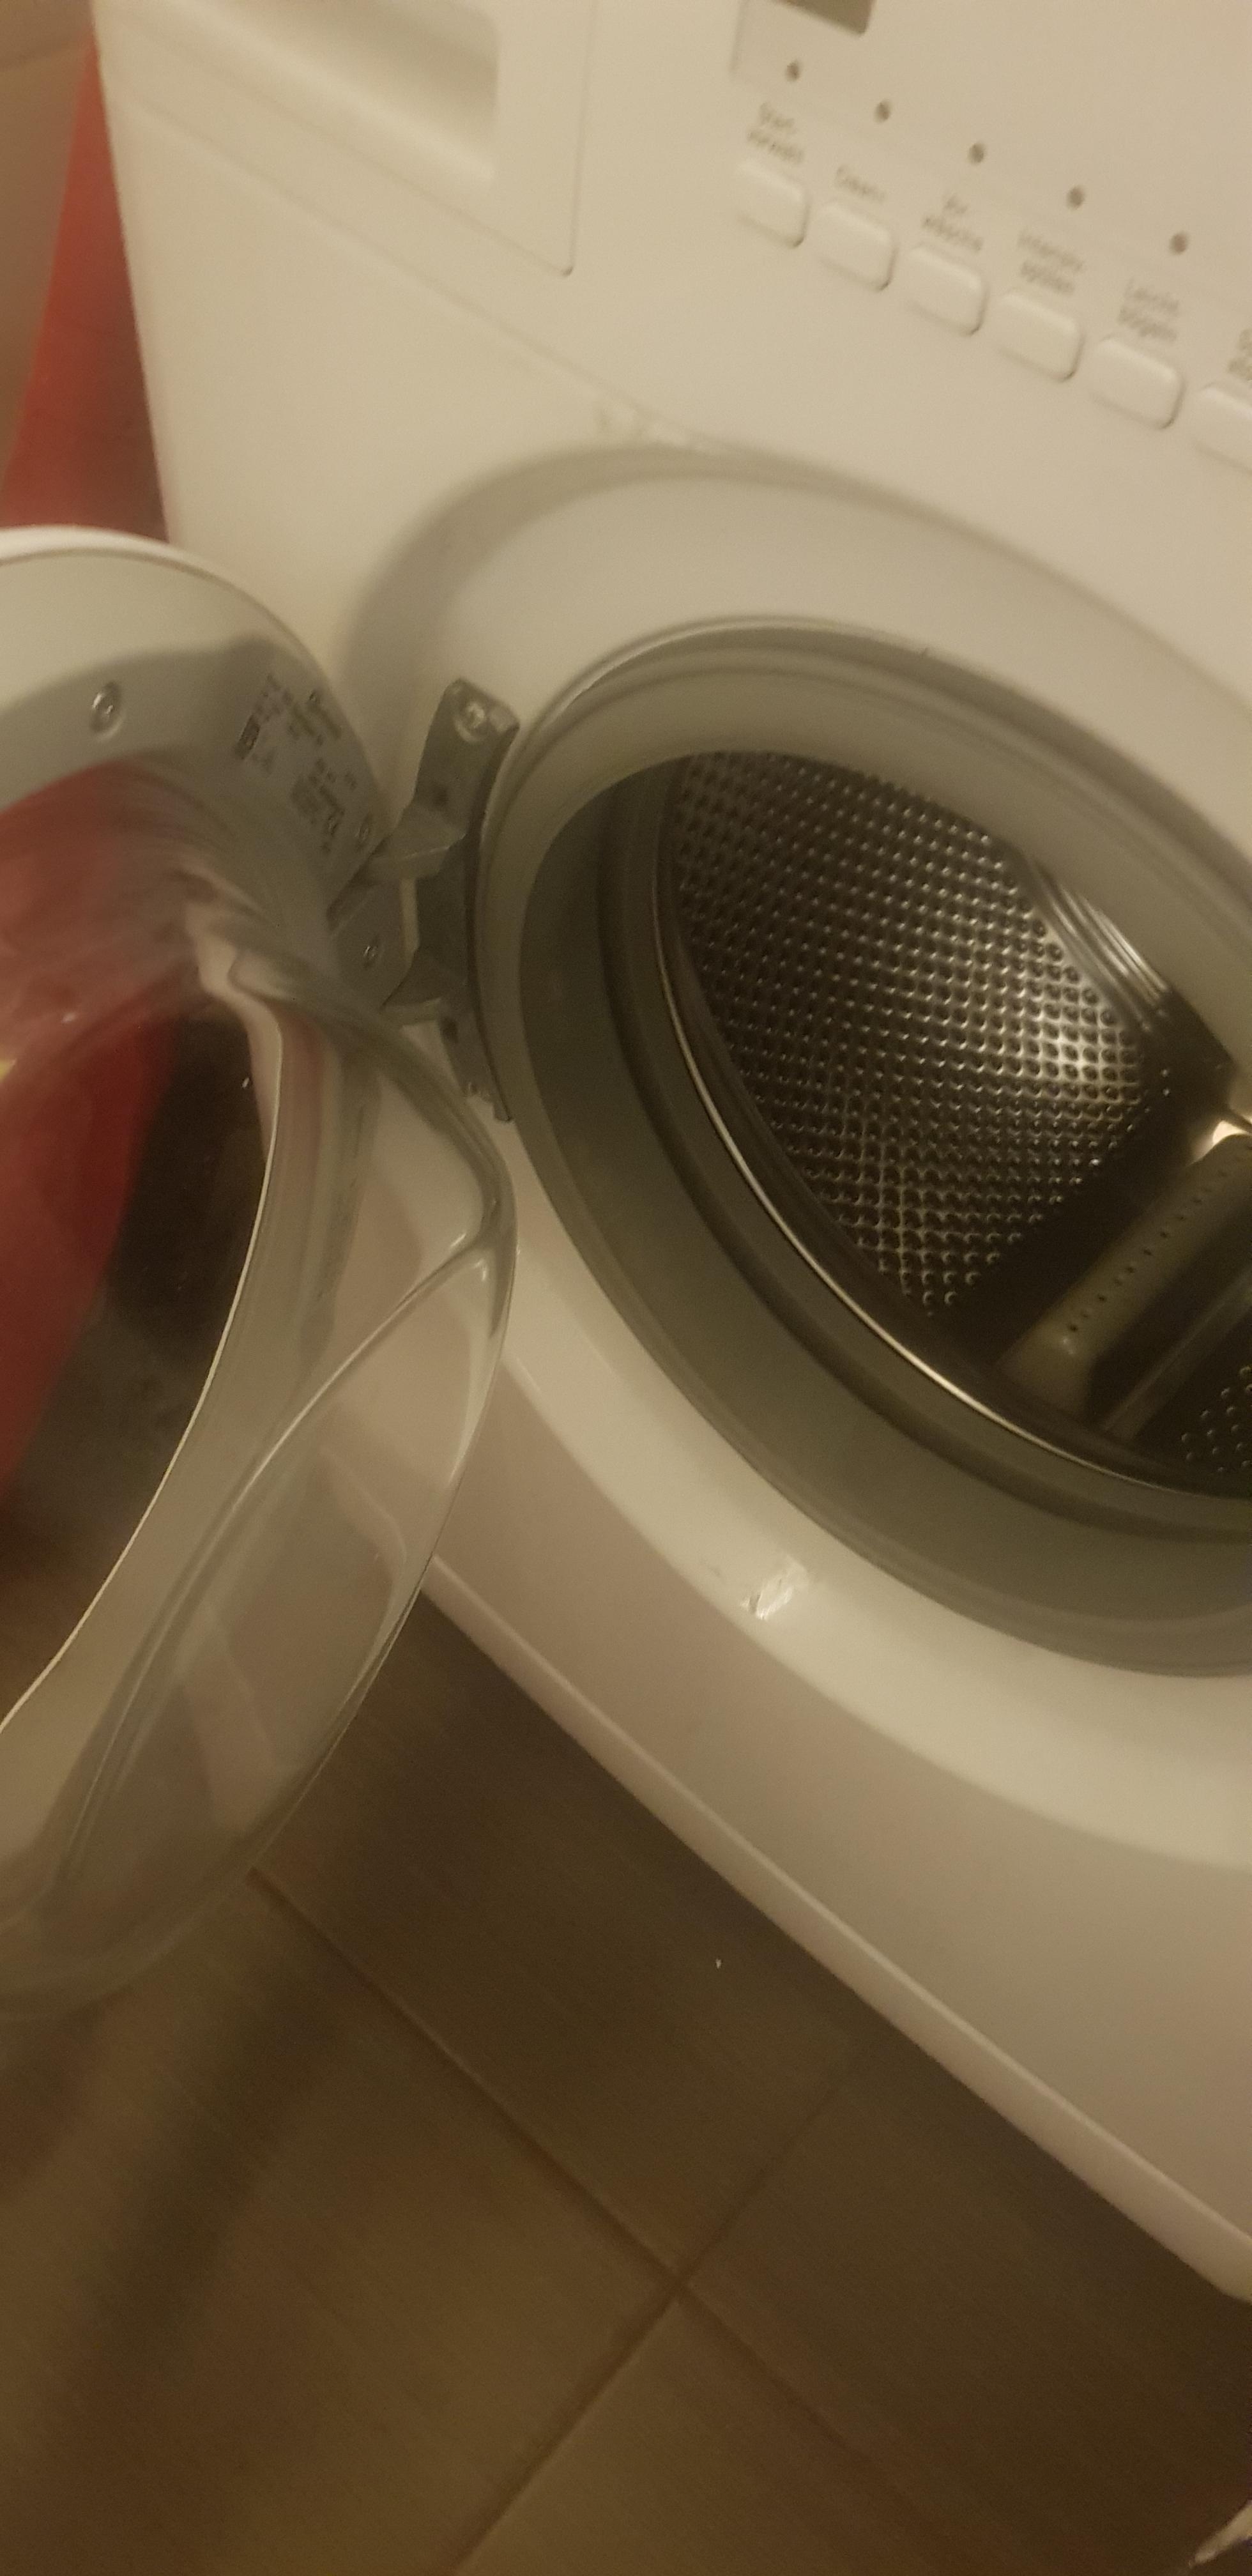 #livingchallenge #ordnungshelfer #waschmaschine ohne dich würde ich im wäscheberg versinken...